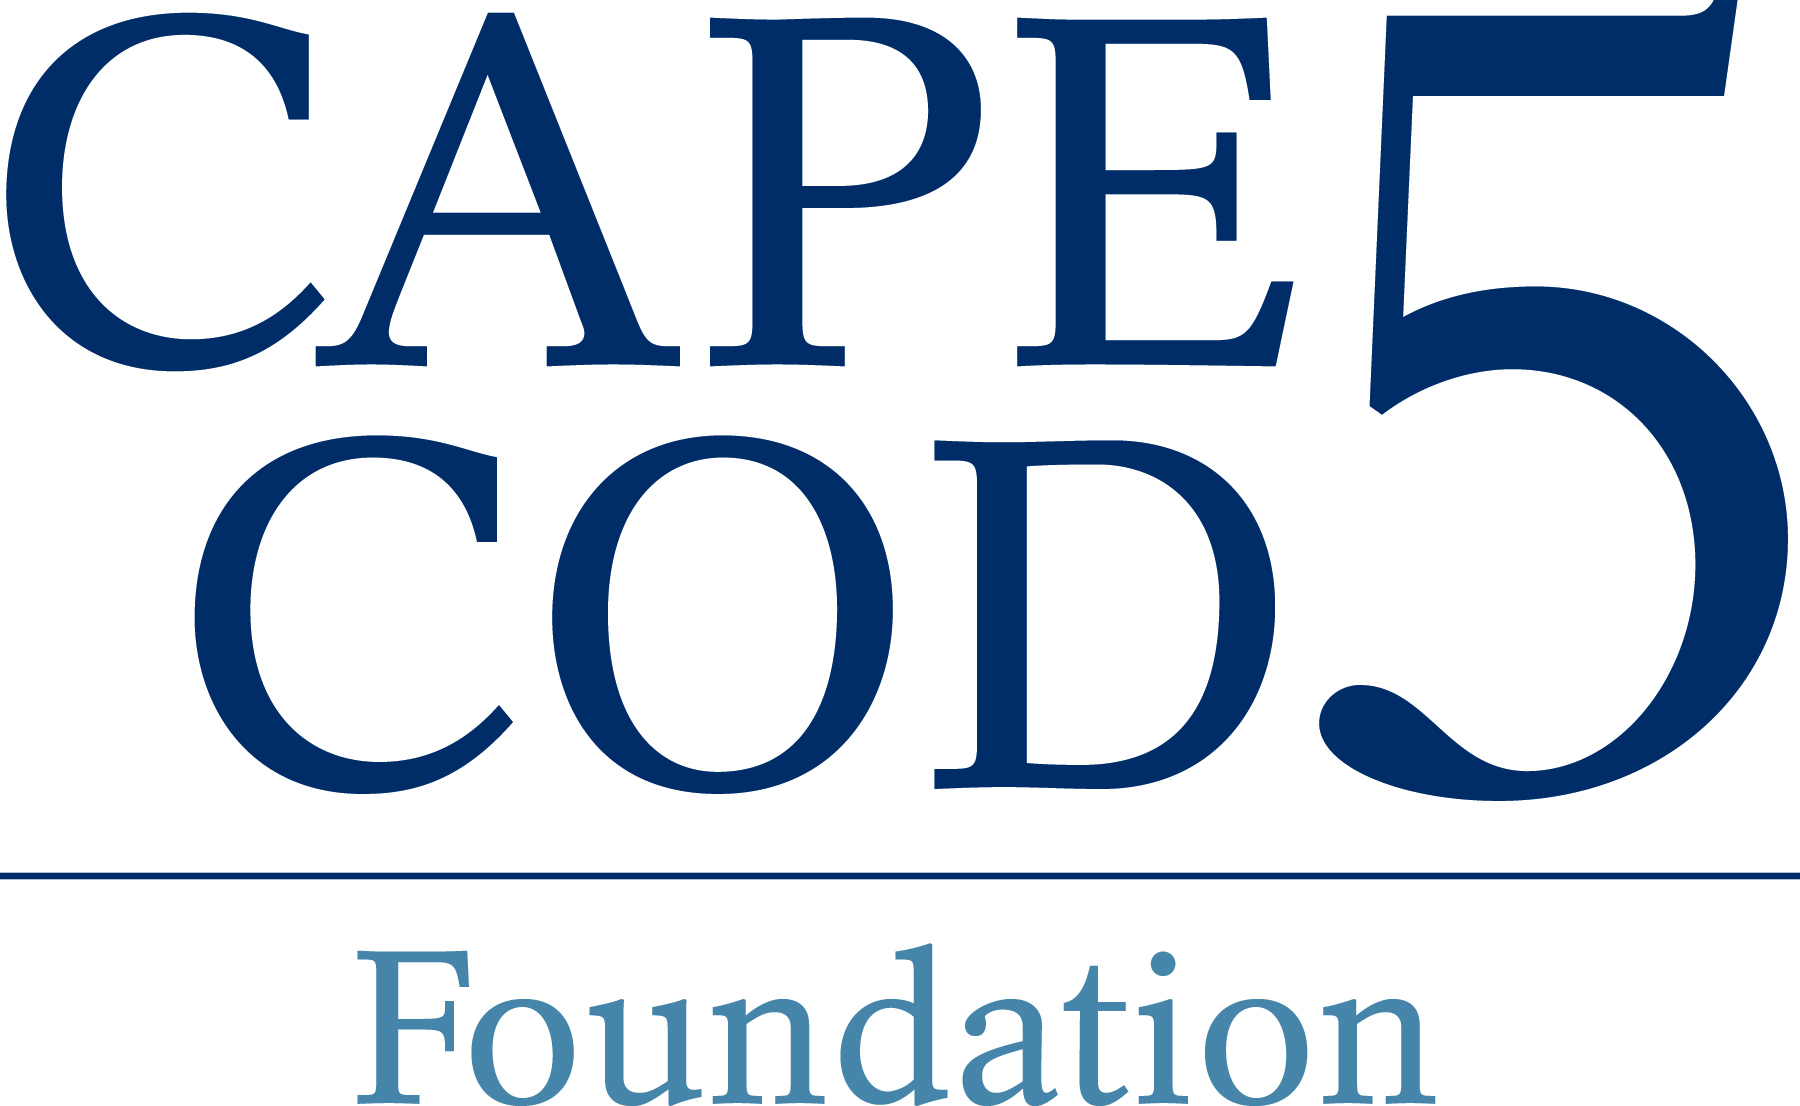 Cape Cod Five